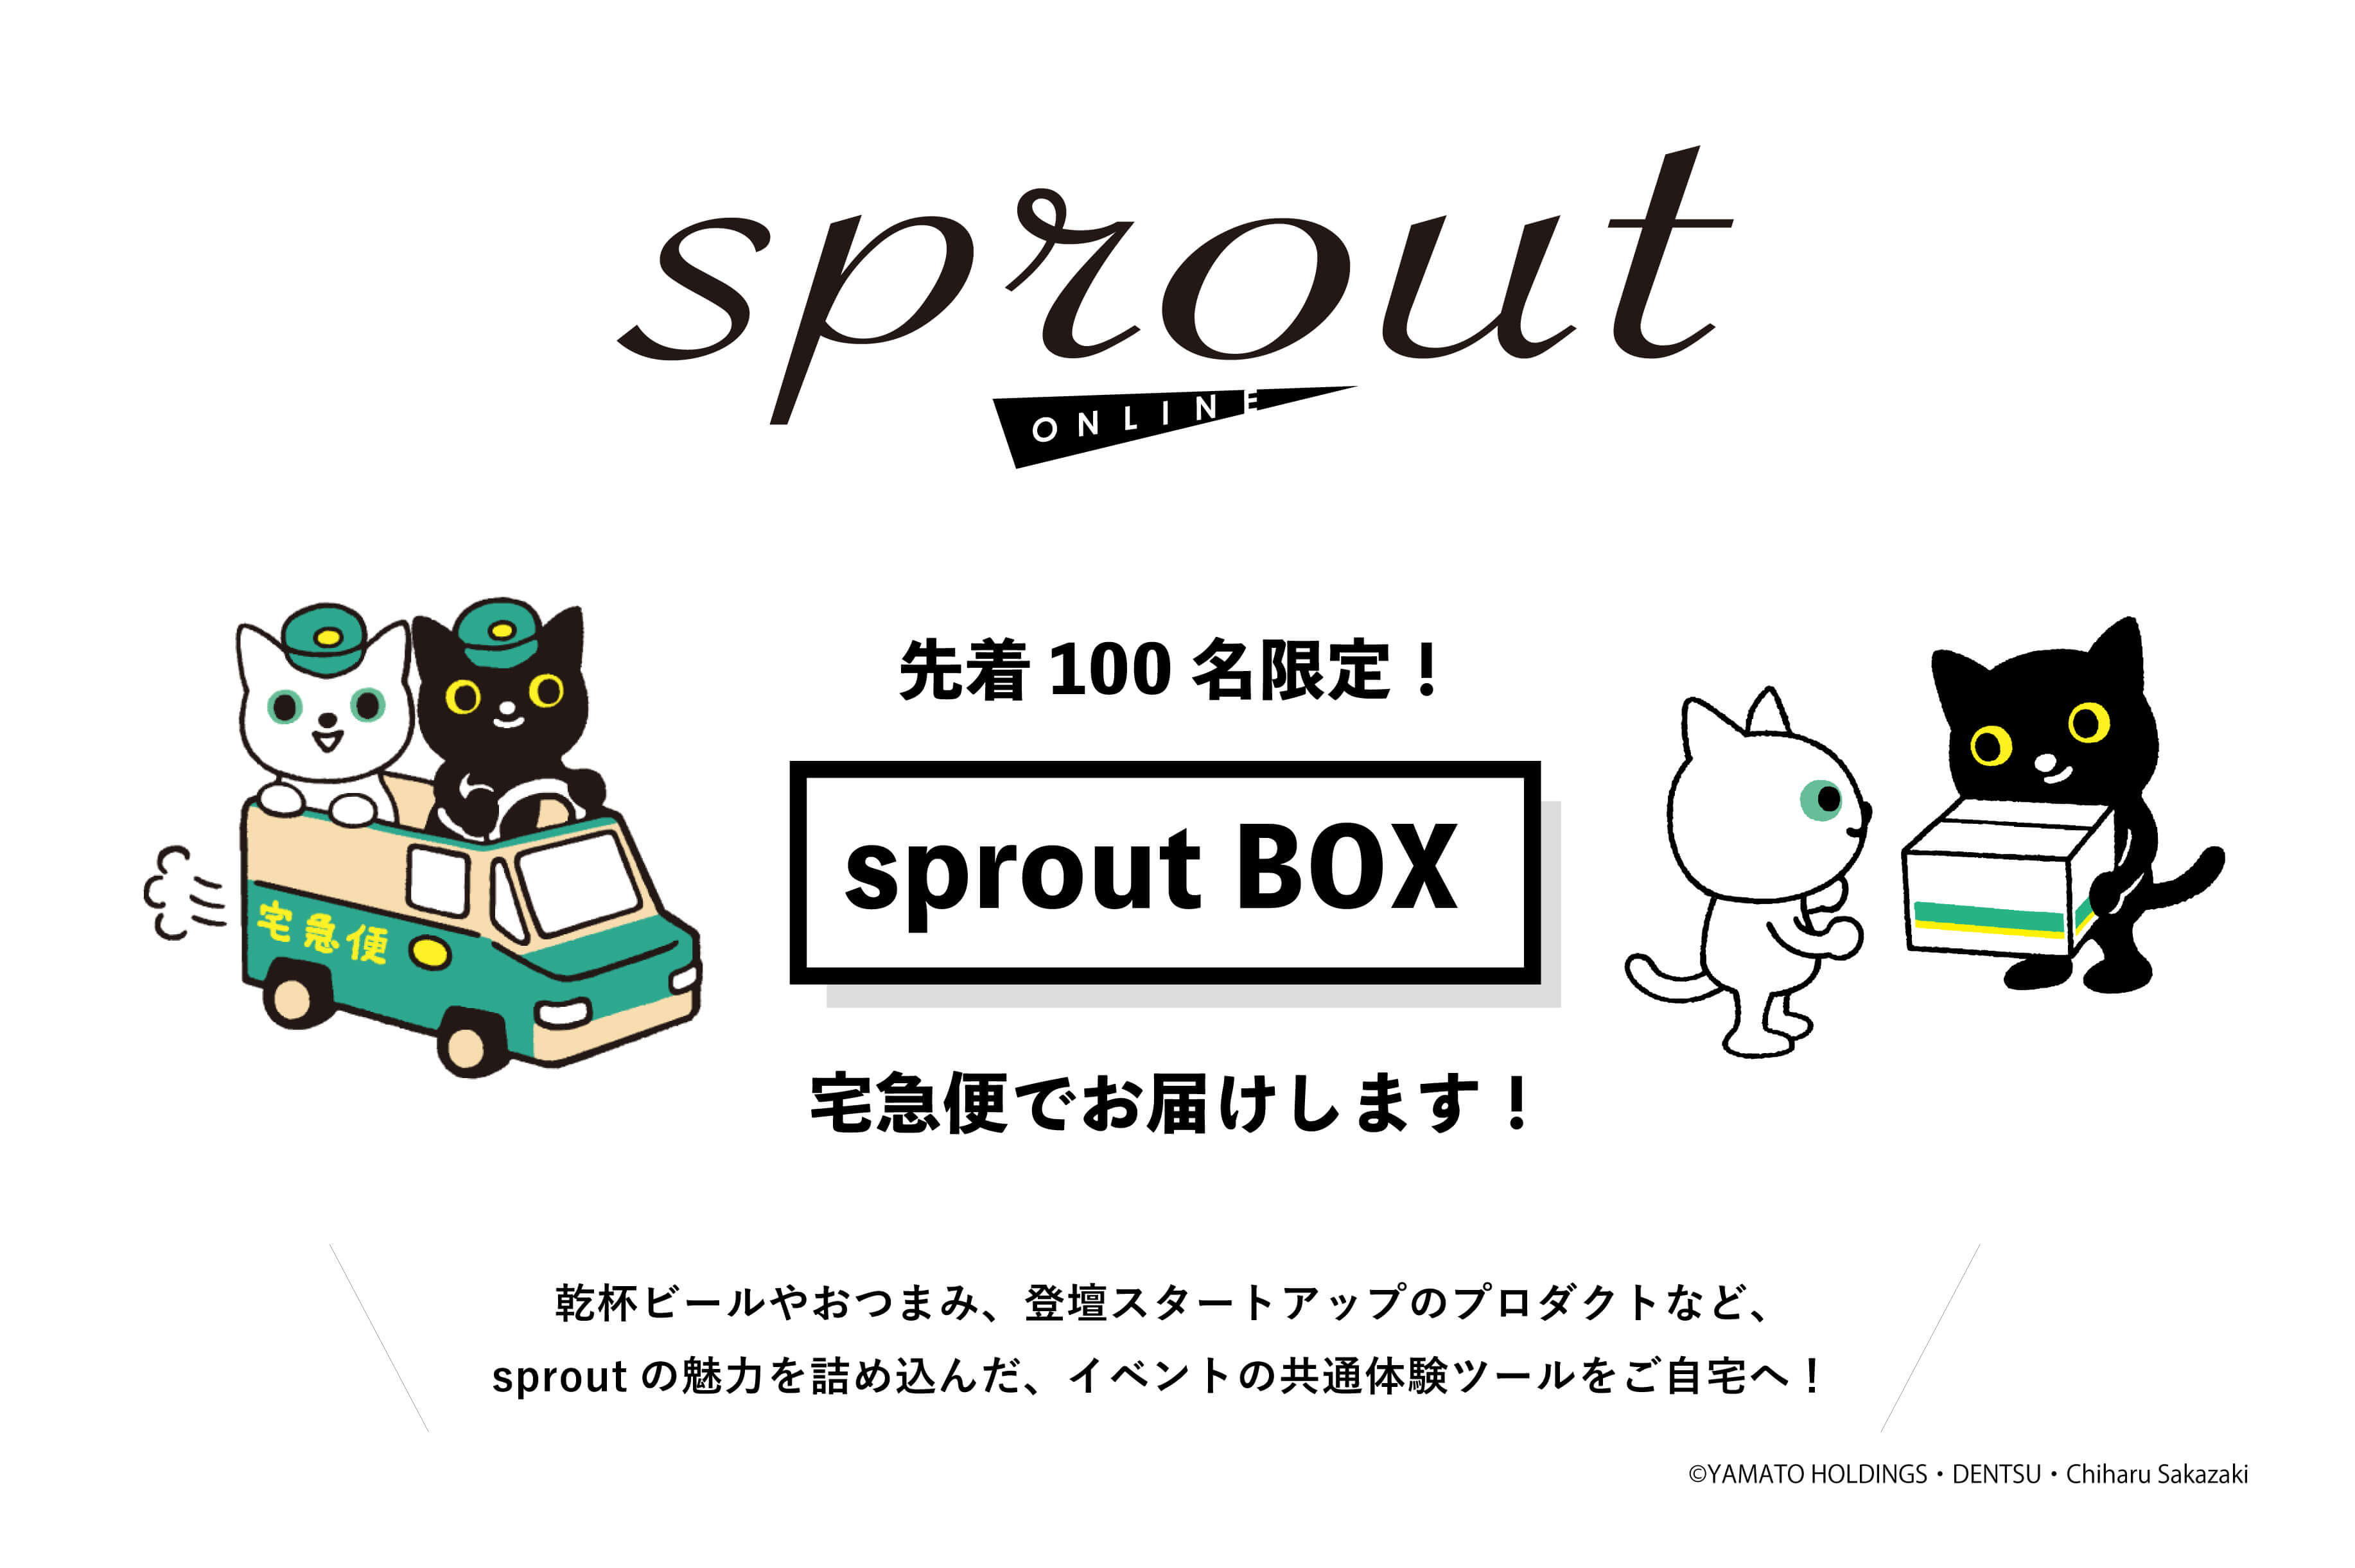 プレゼンイベント「sprout」、ヤマトHDとコラボでオンライン初開催